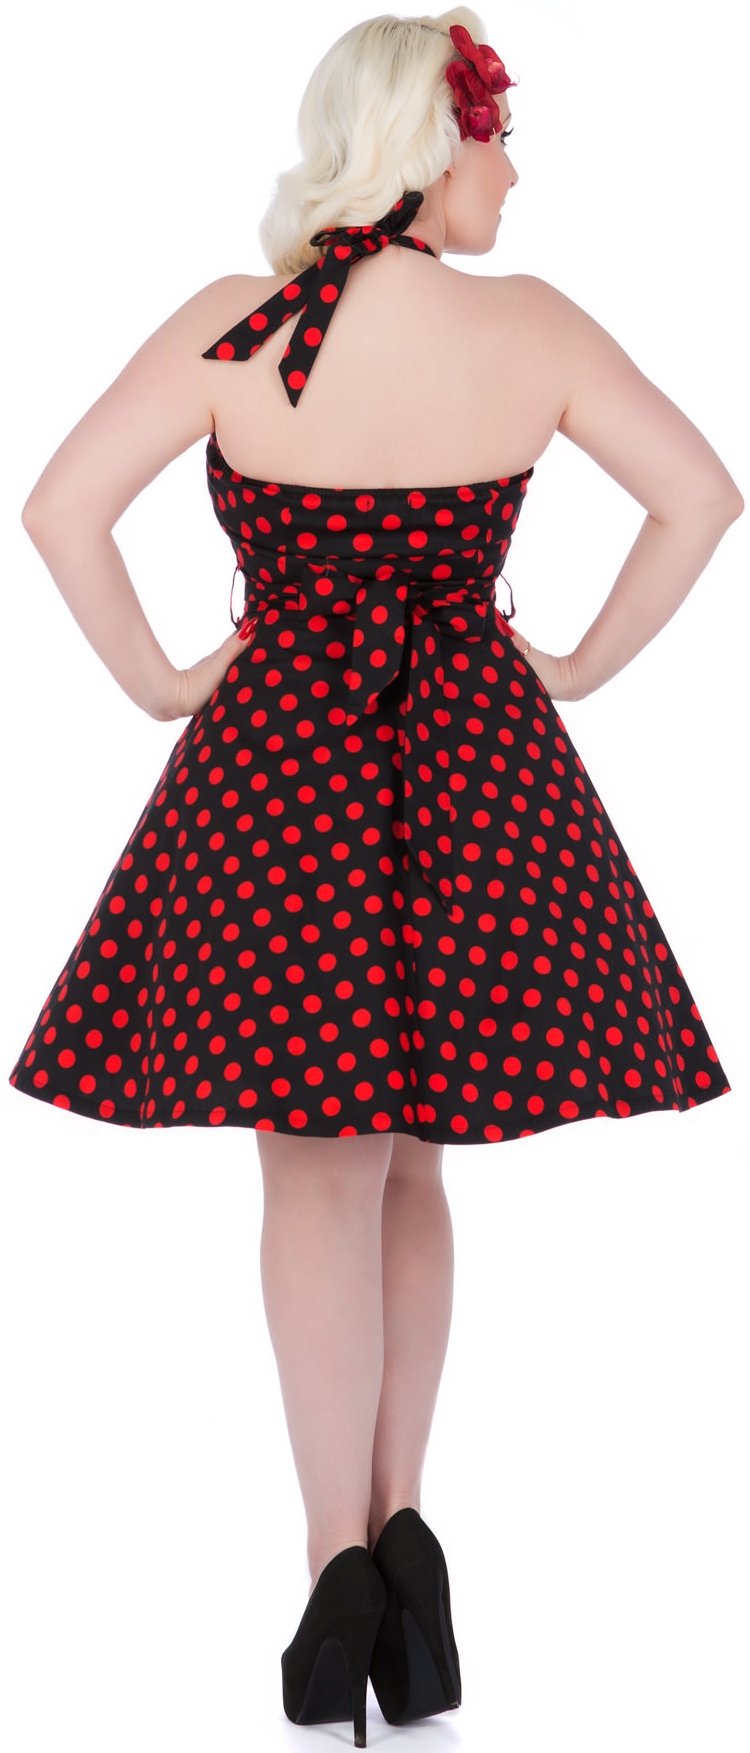 Model wearing black and red polka dot halterneck dress, back view